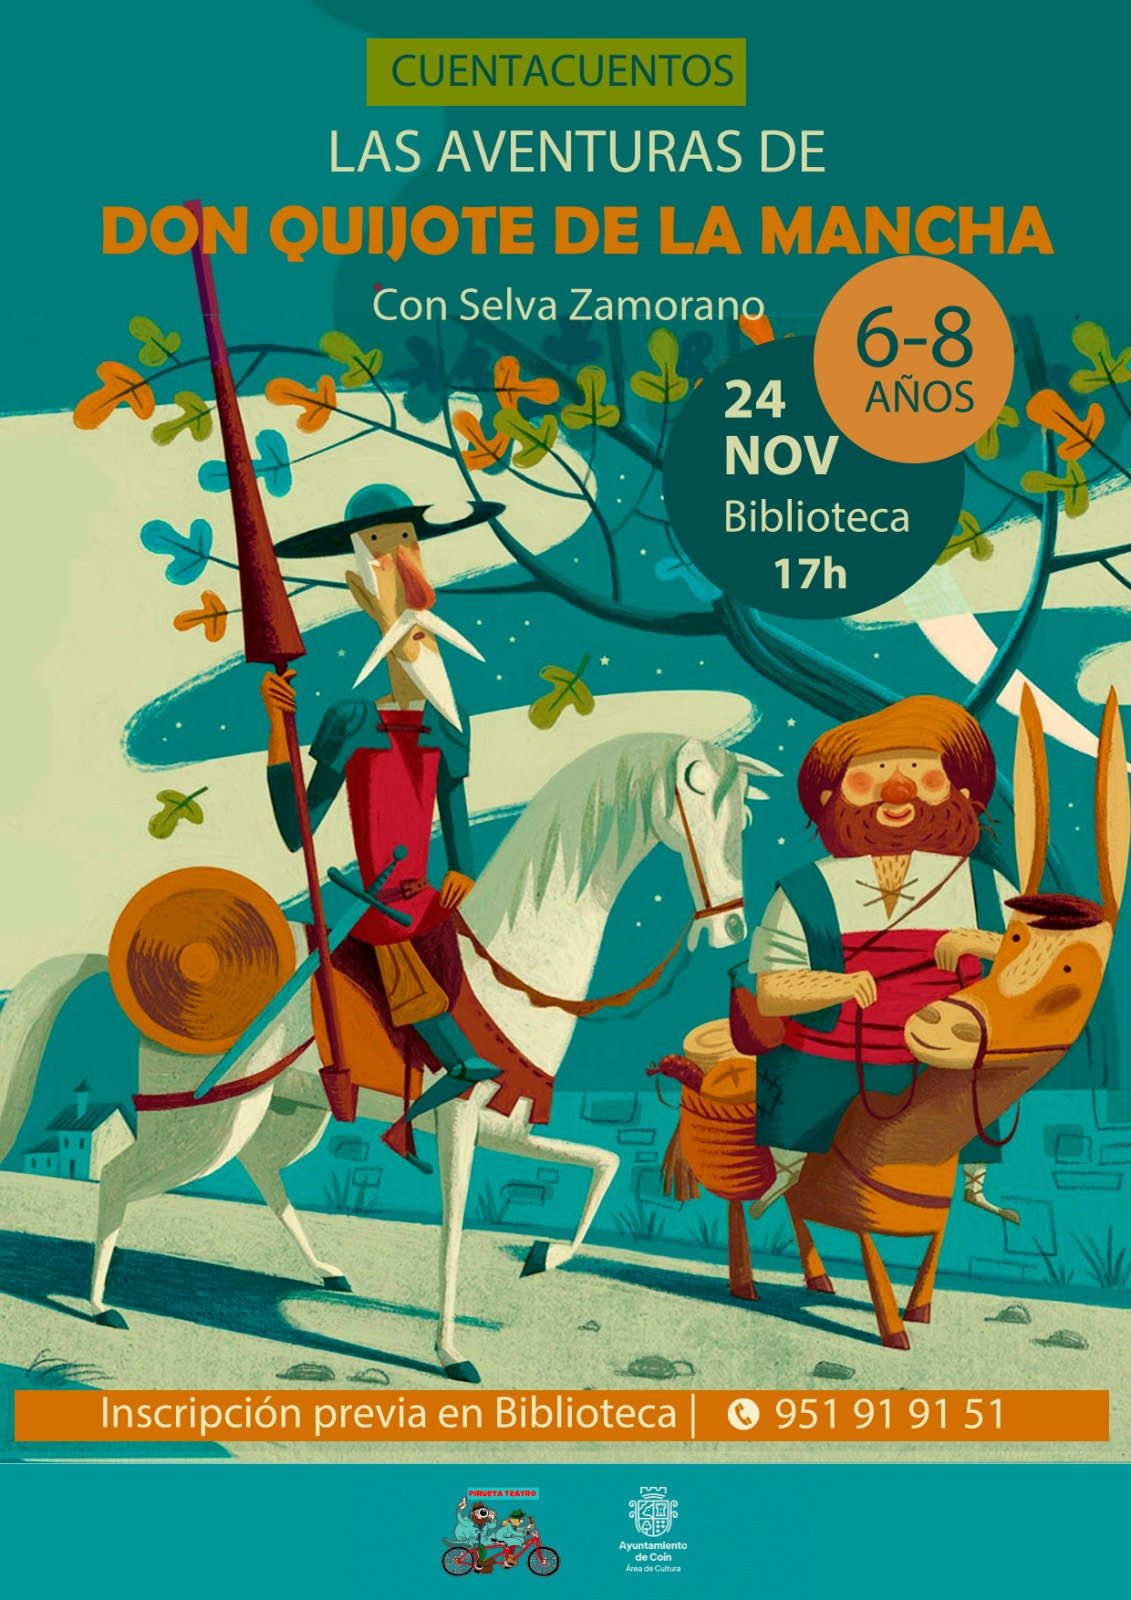 CUENTACUENTOS - Las aventuras de Don Quijote de la Mancha